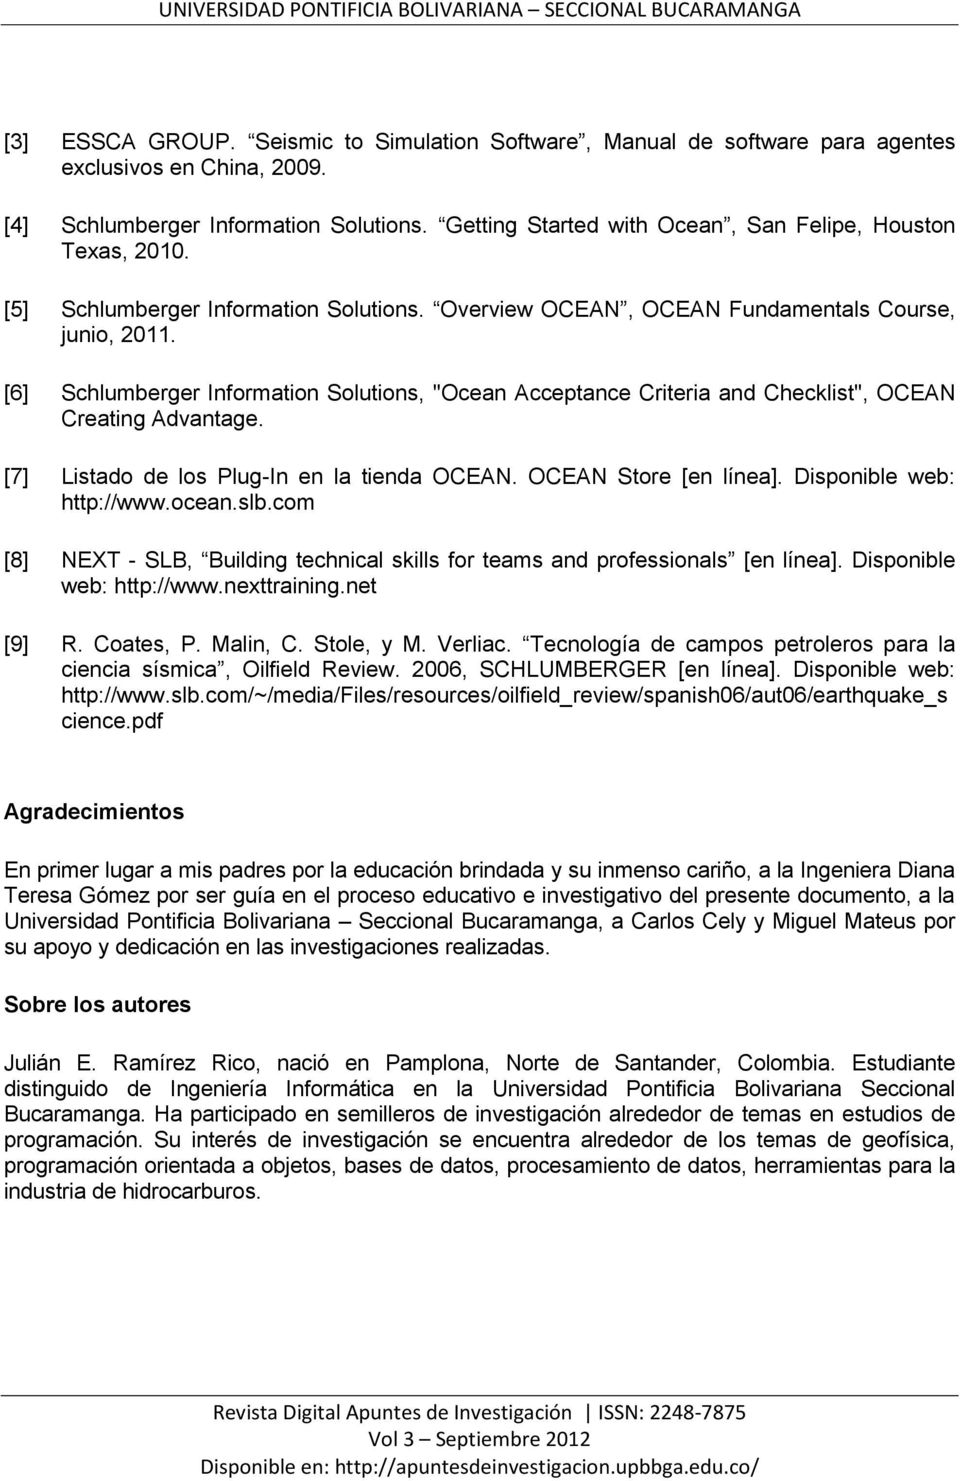 [6] Schlumberger Information Solutions, "Ocean Acceptance Criteria and Checklist", OCEAN Creating Advantage. [7] Listado de los Plug-In en la tienda OCEAN. OCEAN Store [en línea].